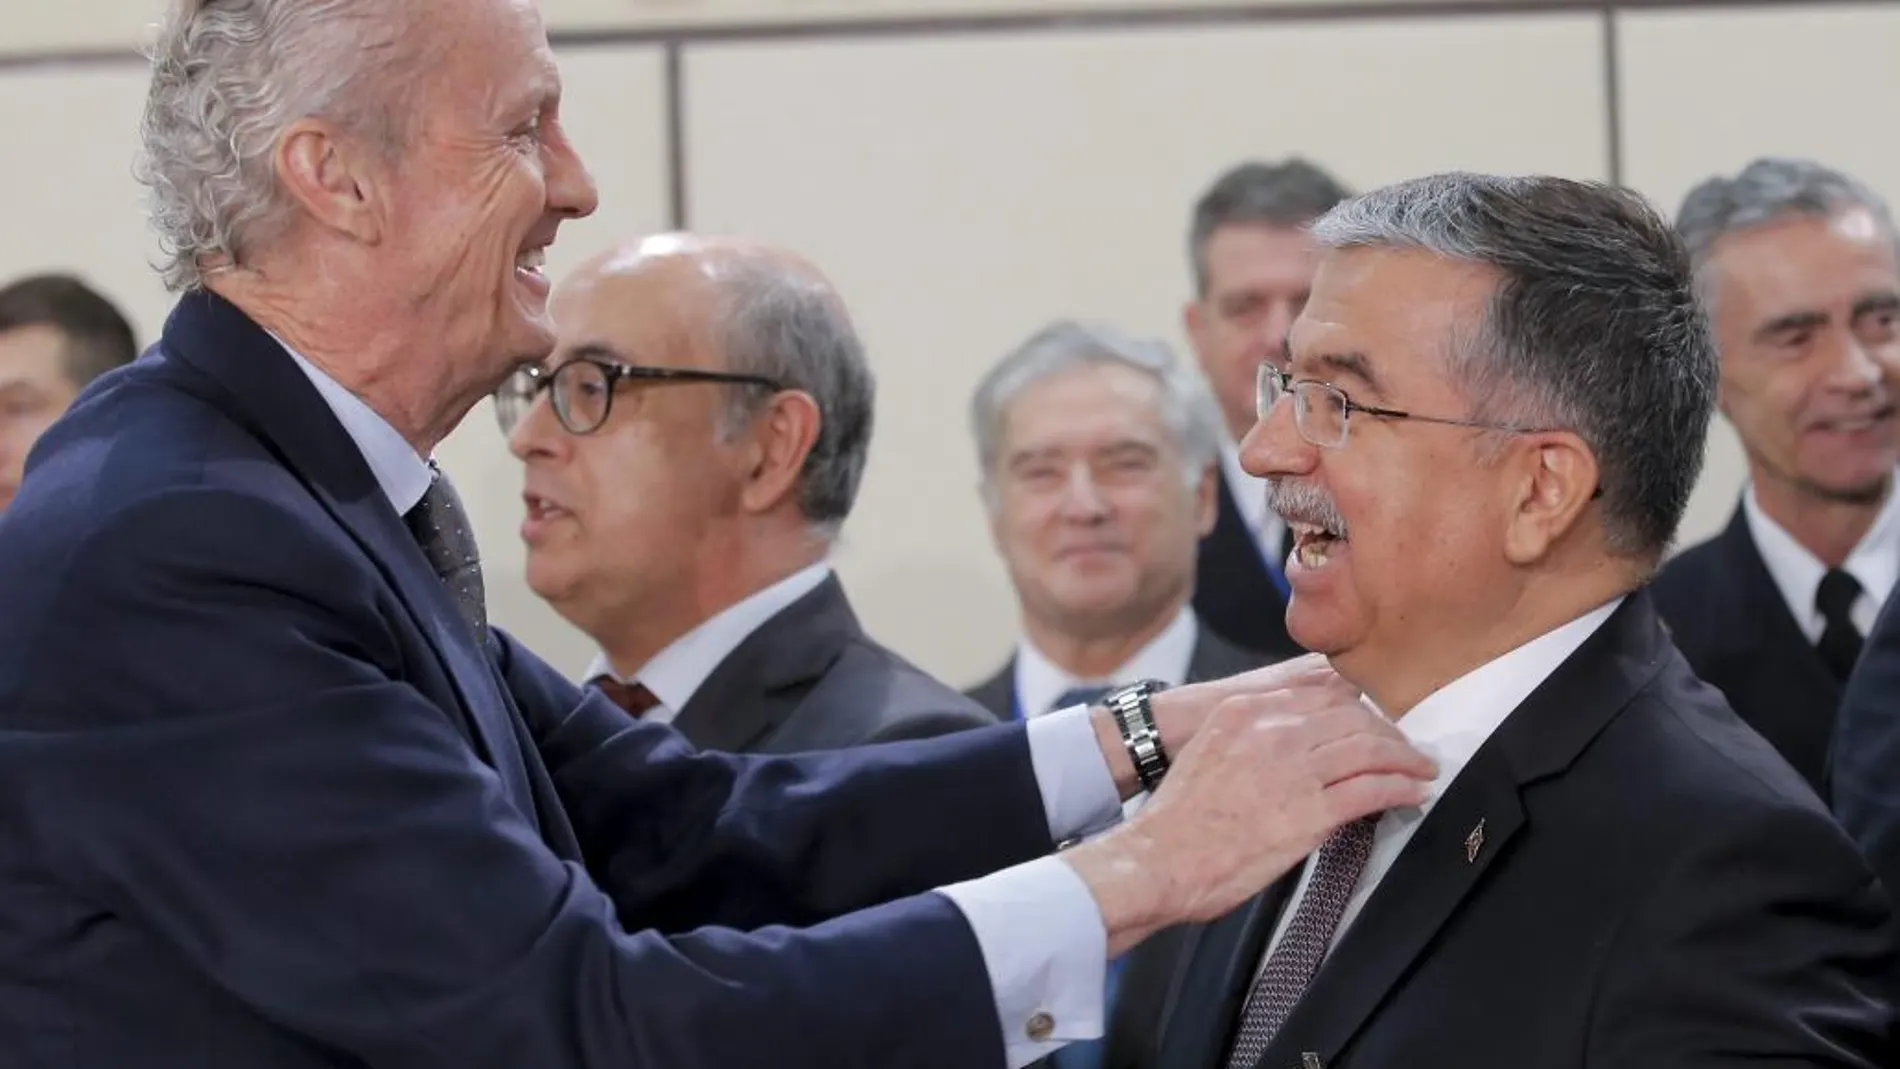 El ministro español de Defensa, Pedro Morenés, saluda a su homólogo turco, Ismet Yilmaz, al comienzo de la reunión de los ministros de Defensa de los aliados de la OTAN